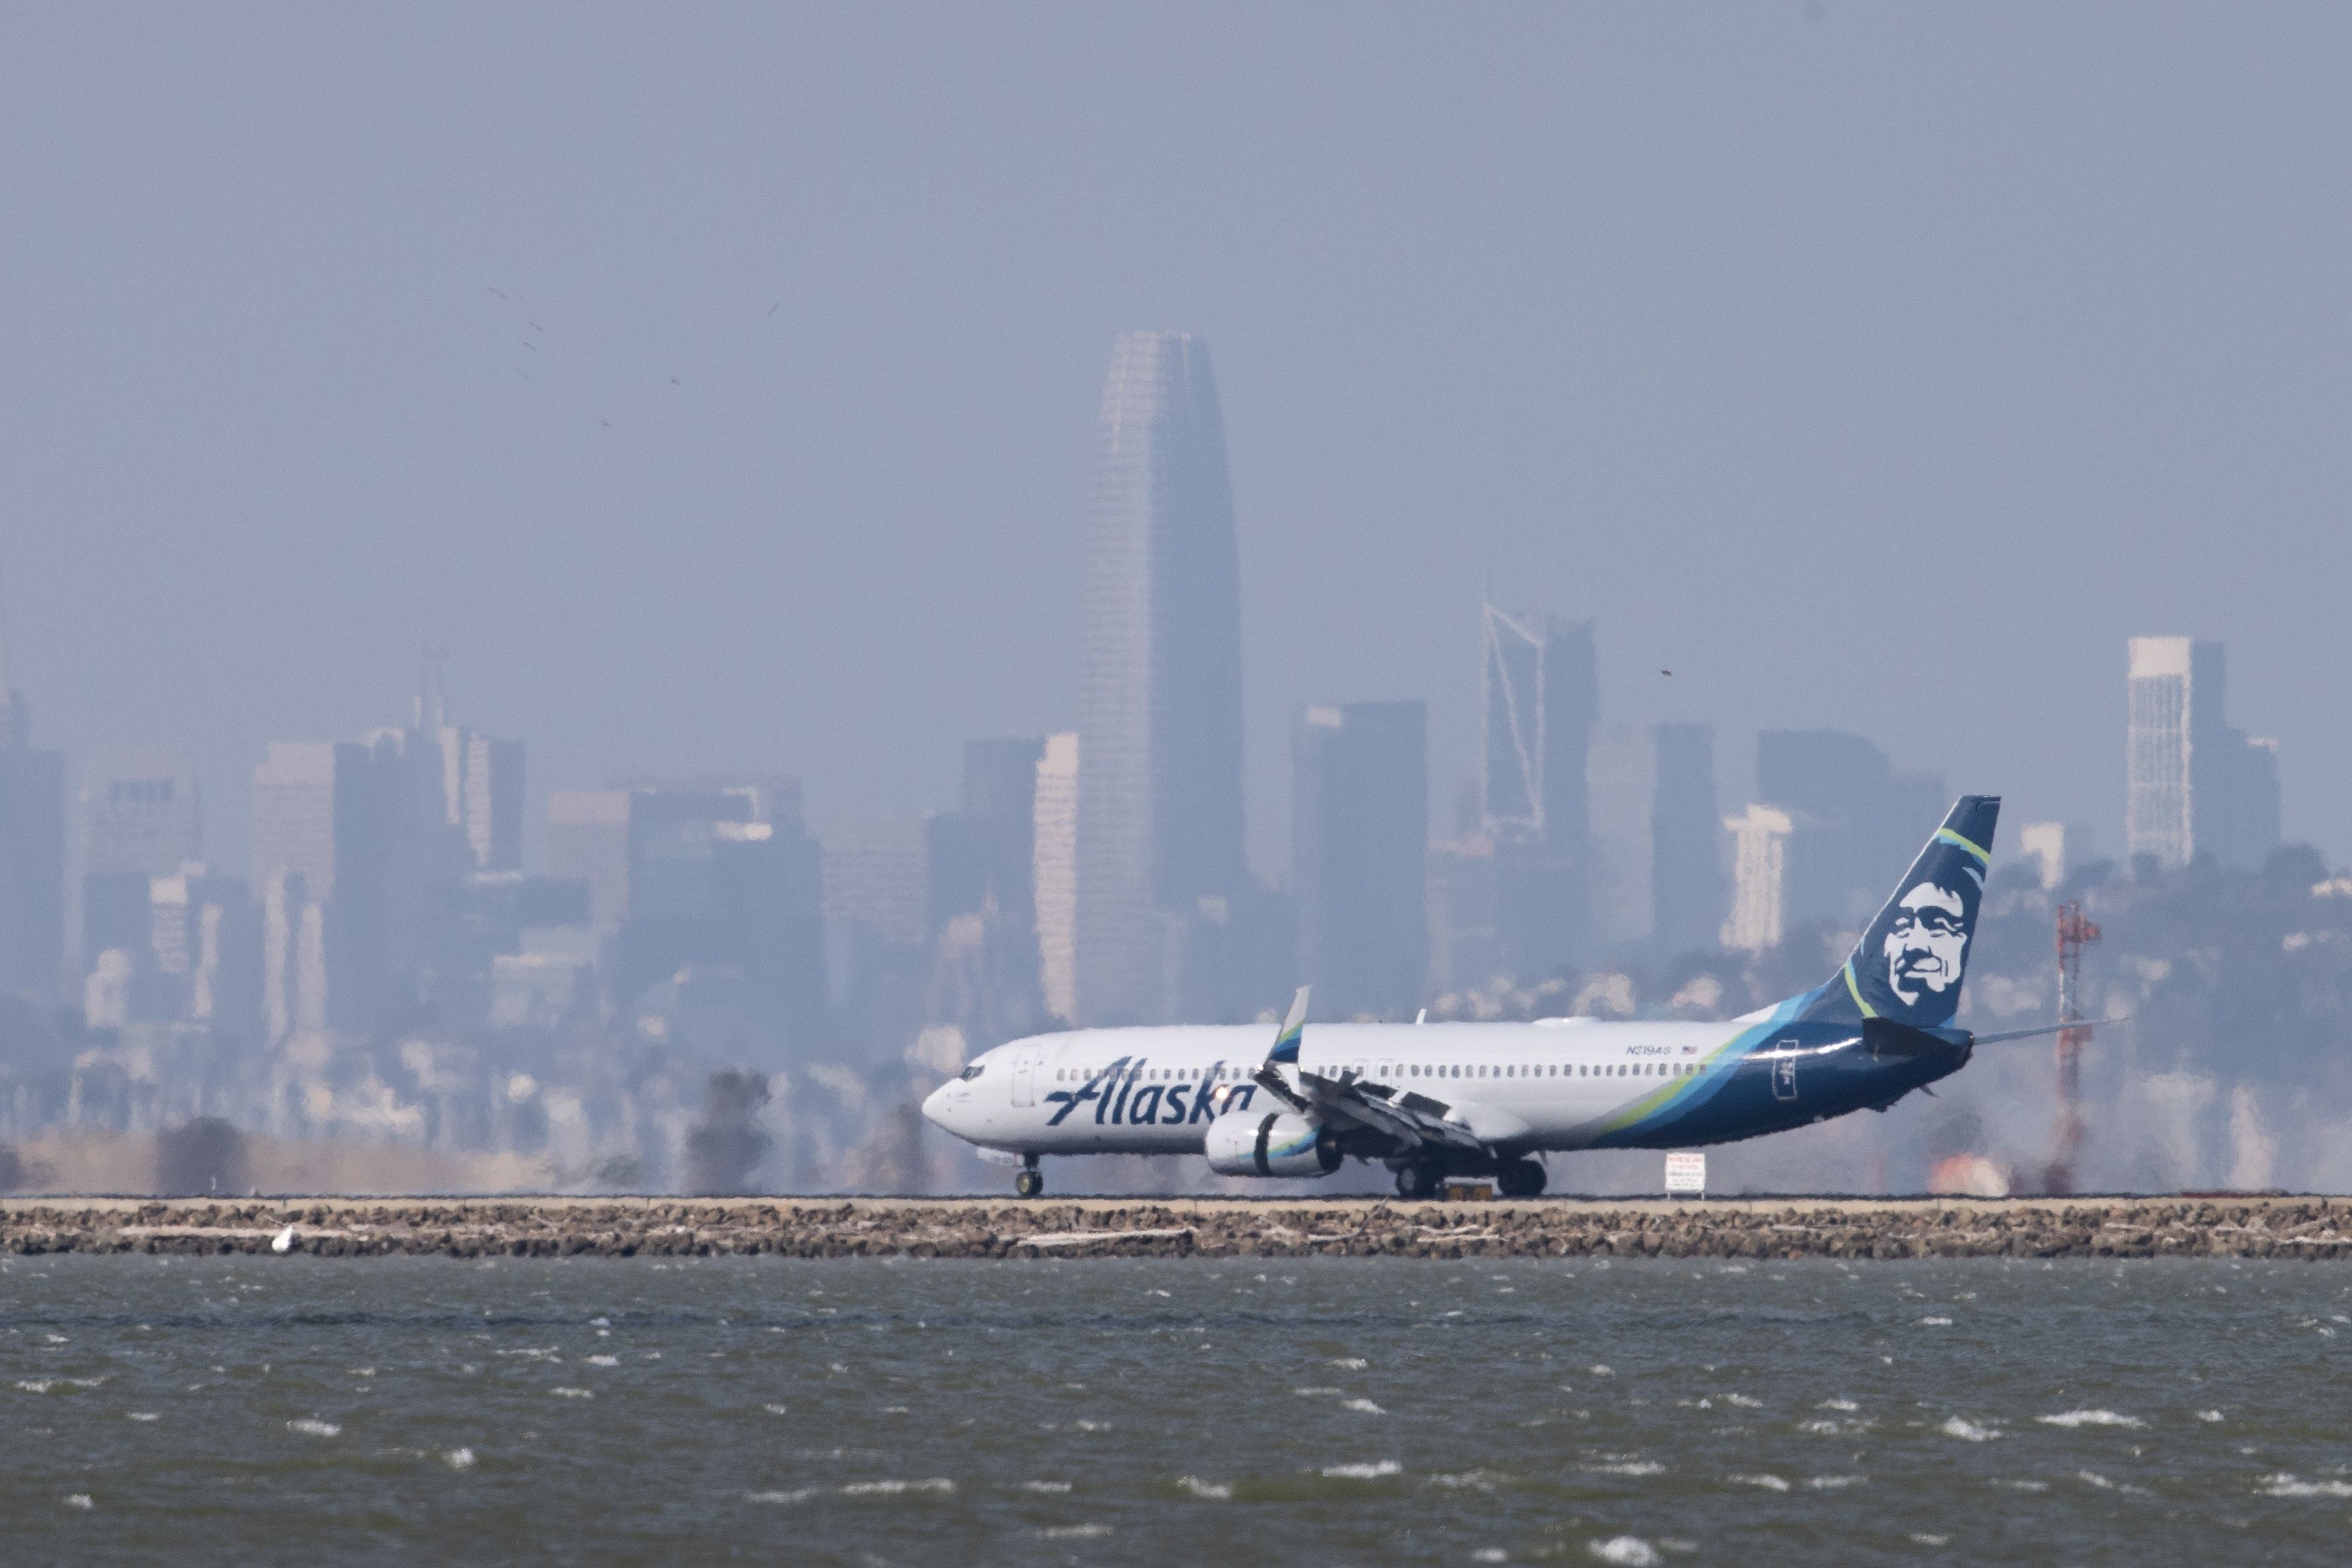 Alaska Airlines at San Francisco International Airport